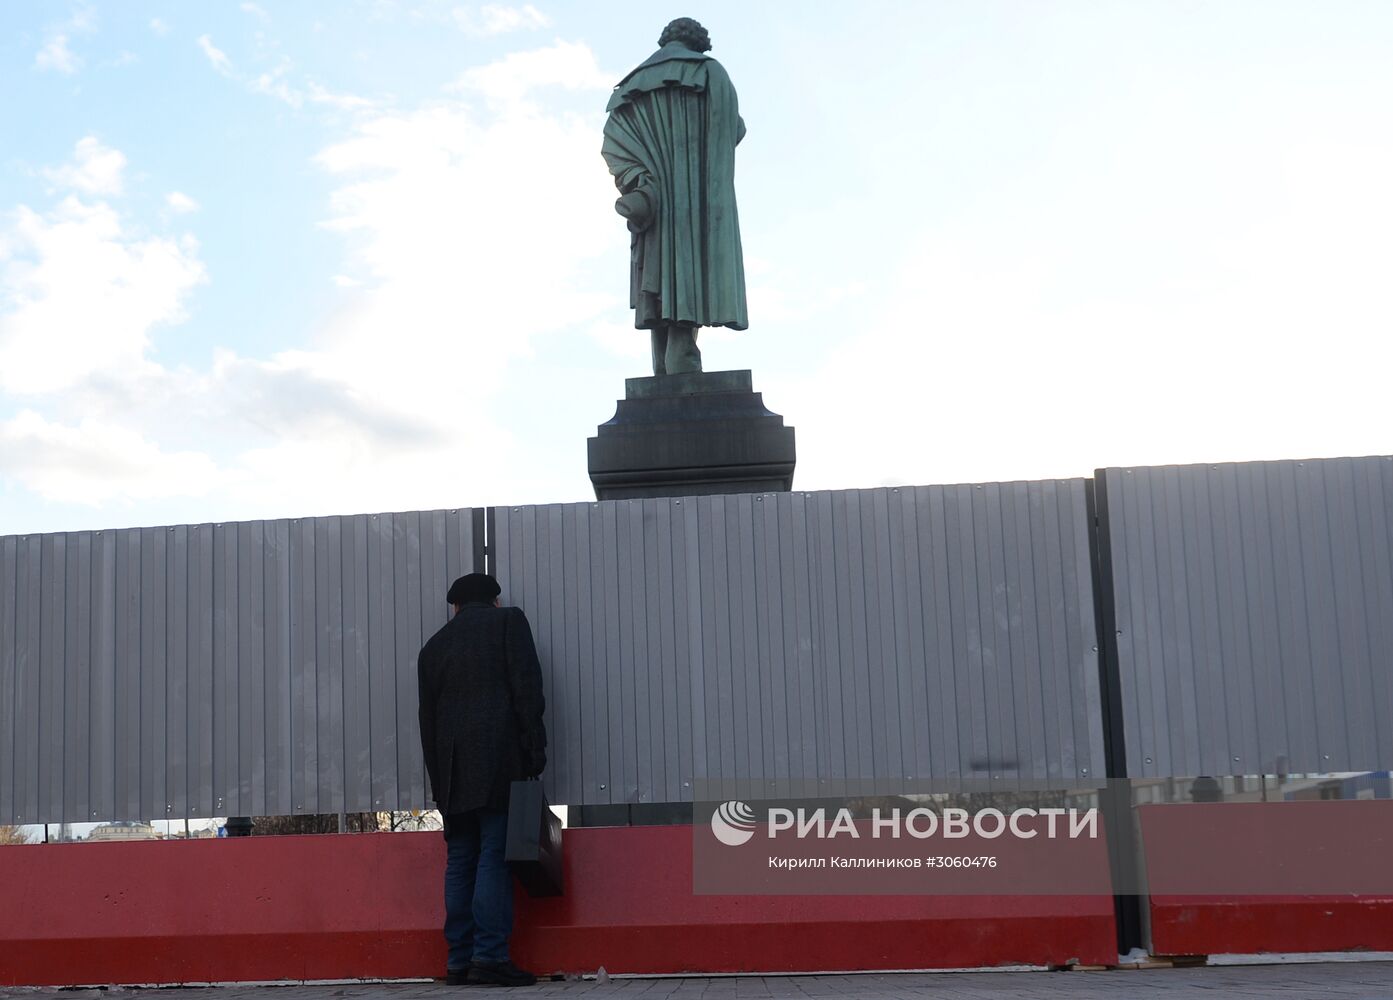 Реставрация памятника А.С. Пушкину началась в Москве